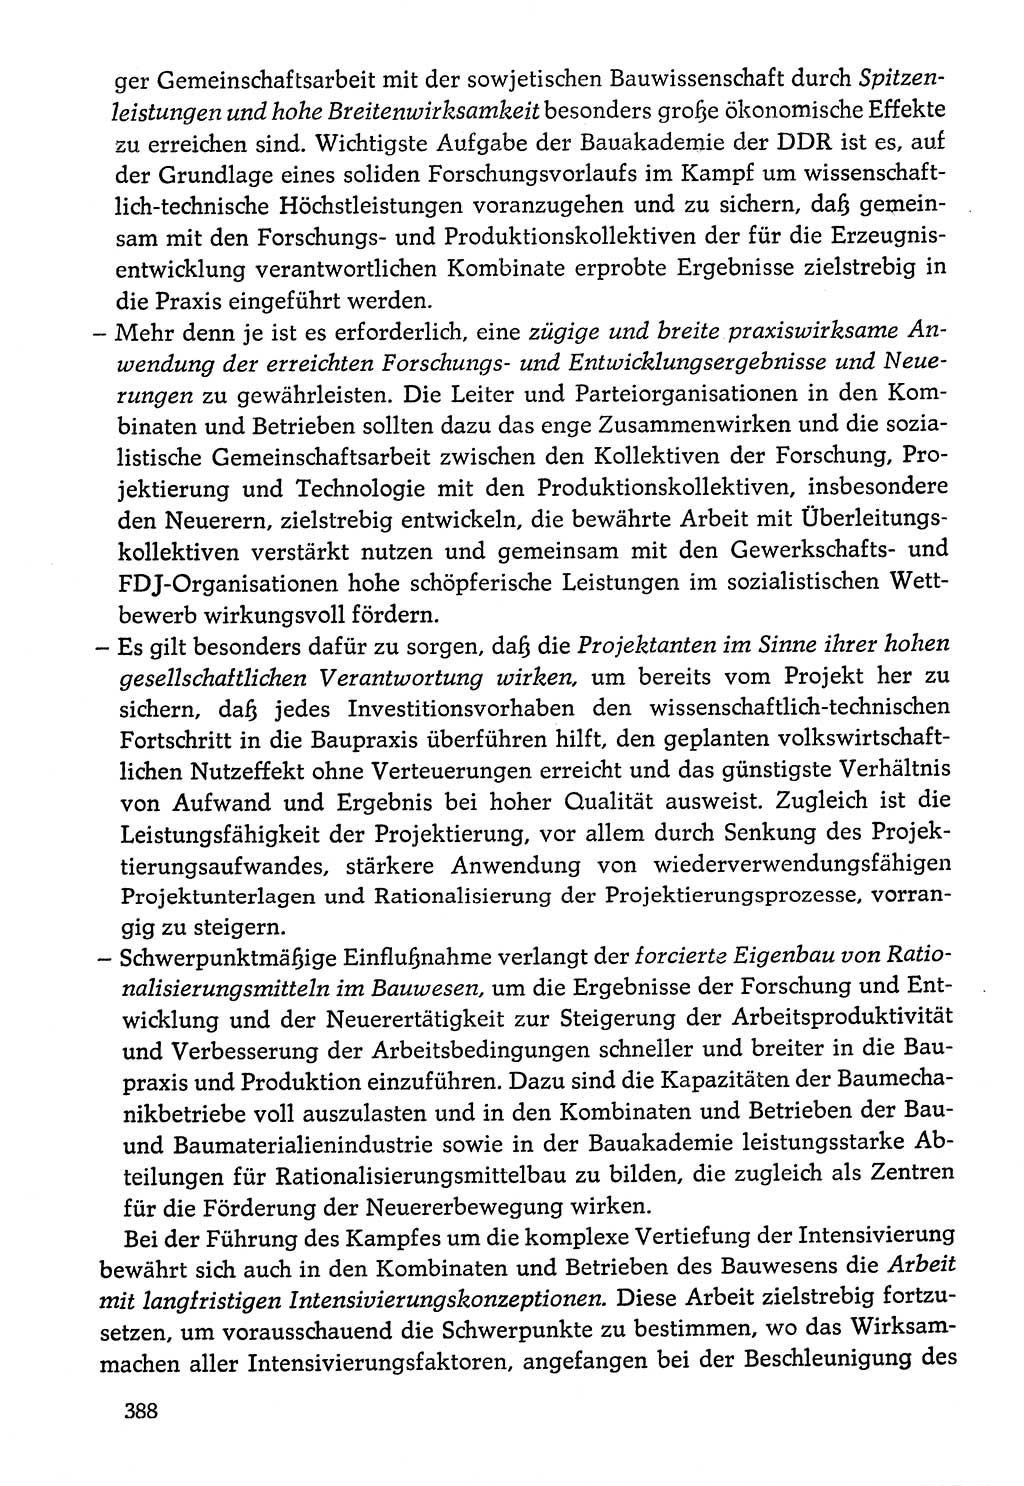 Dokumente der Sozialistischen Einheitspartei Deutschlands (SED) [Deutsche Demokratische Republik (DDR)] 1976-1977, Seite 388 (Dok. SED DDR 1976-1977, S. 388)